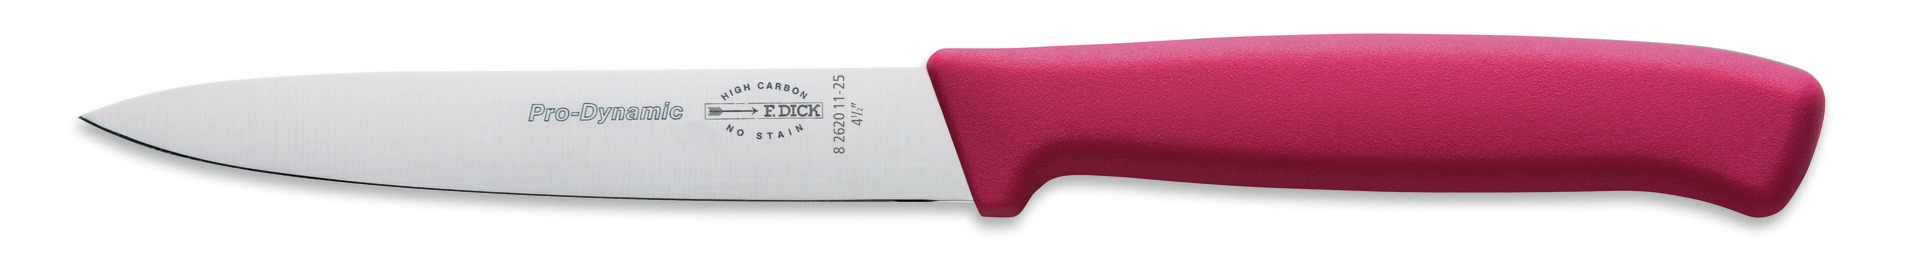 Küchenmesser Klingenlänge 110 mm pinker Griff